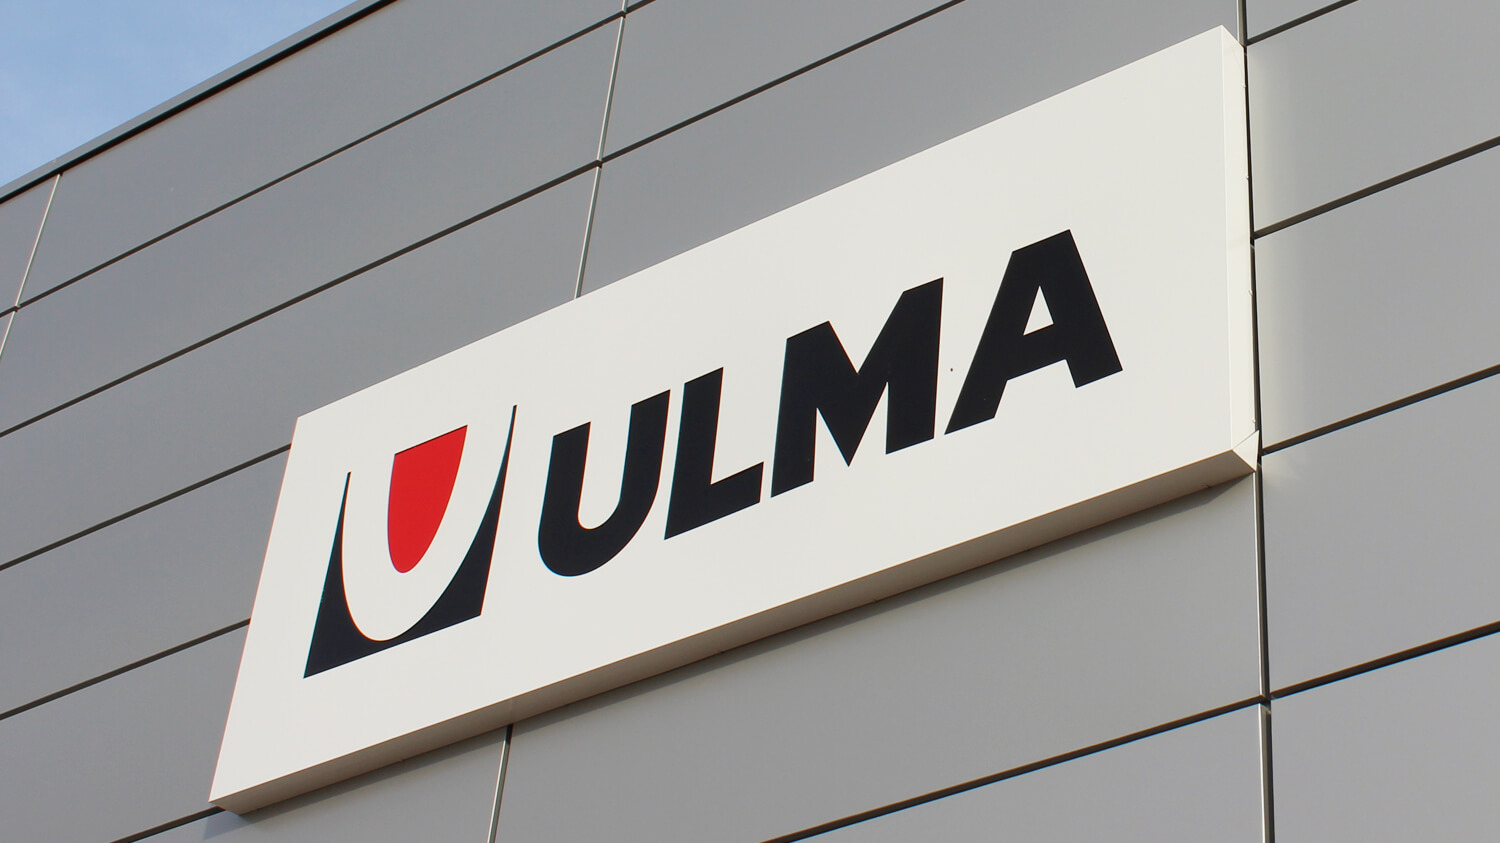 ULMA - kasetony świetlne - ULMA - kaseton reklamowy z nazwą firmy i logo